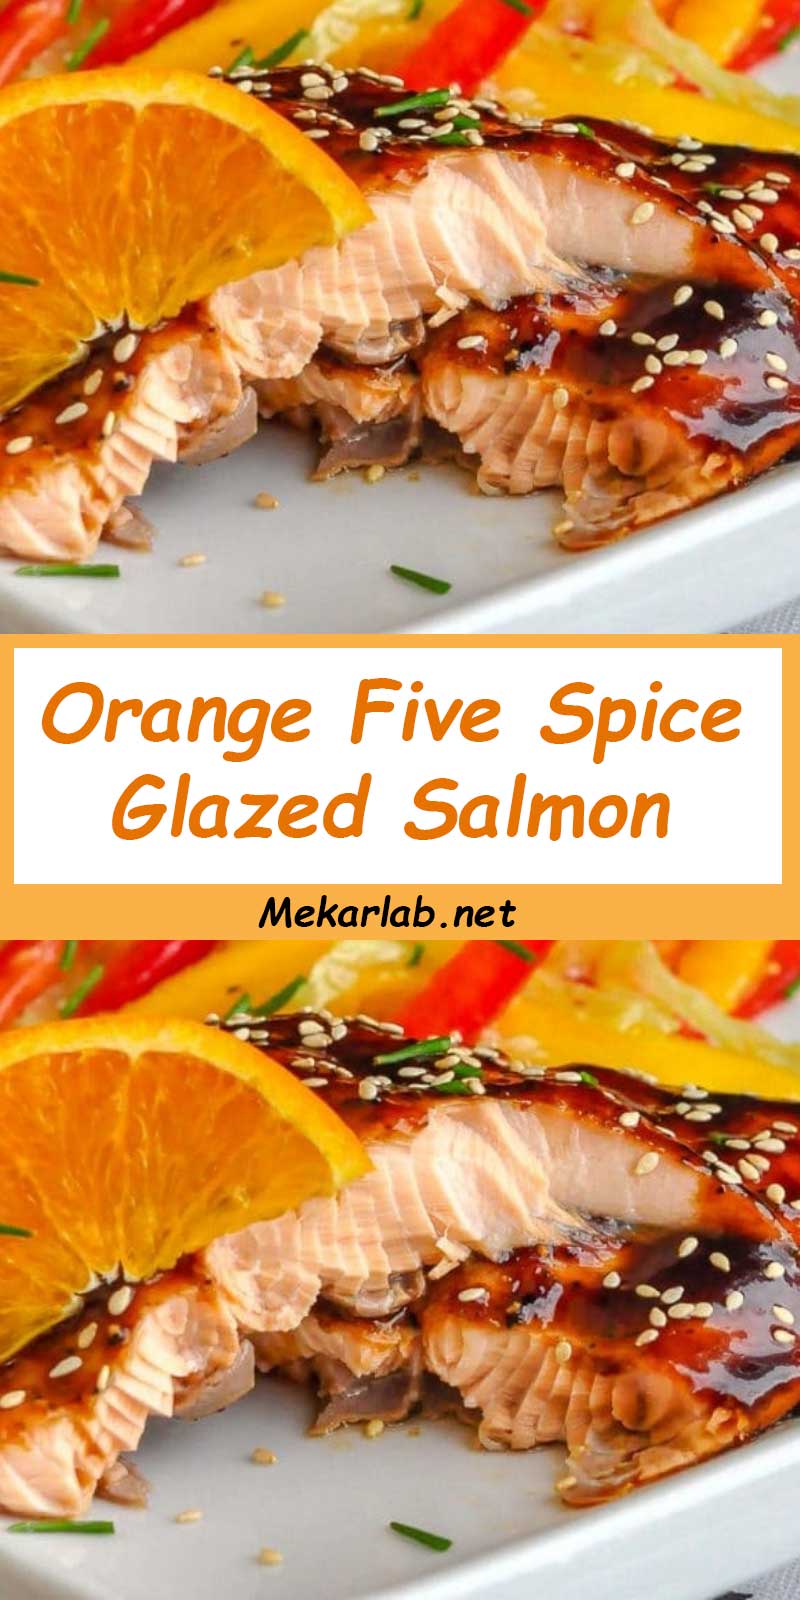 Orange Five Spice Glazed Salmon